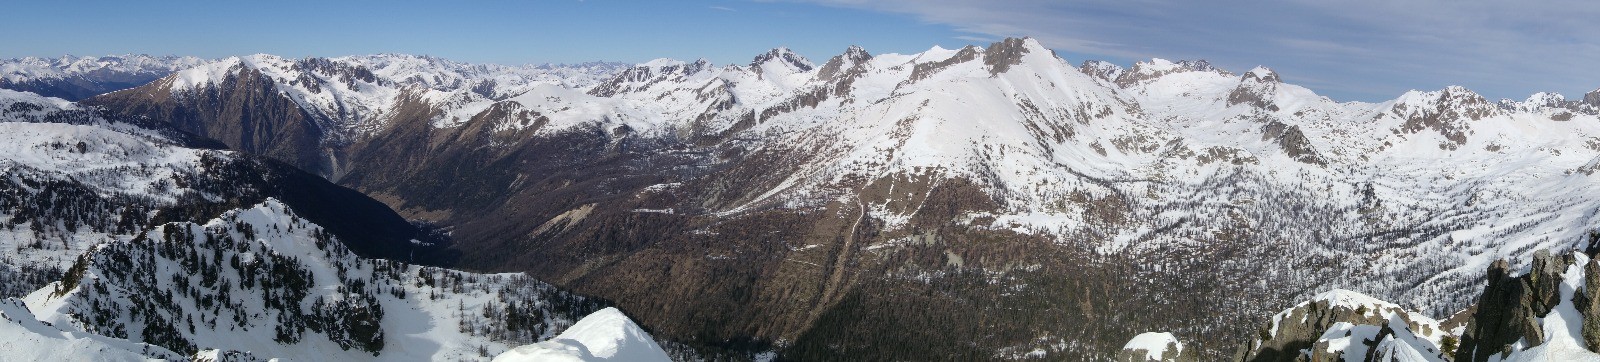 Panorama depuis le Mont St-Sauveur à la Cime de Frémamorte